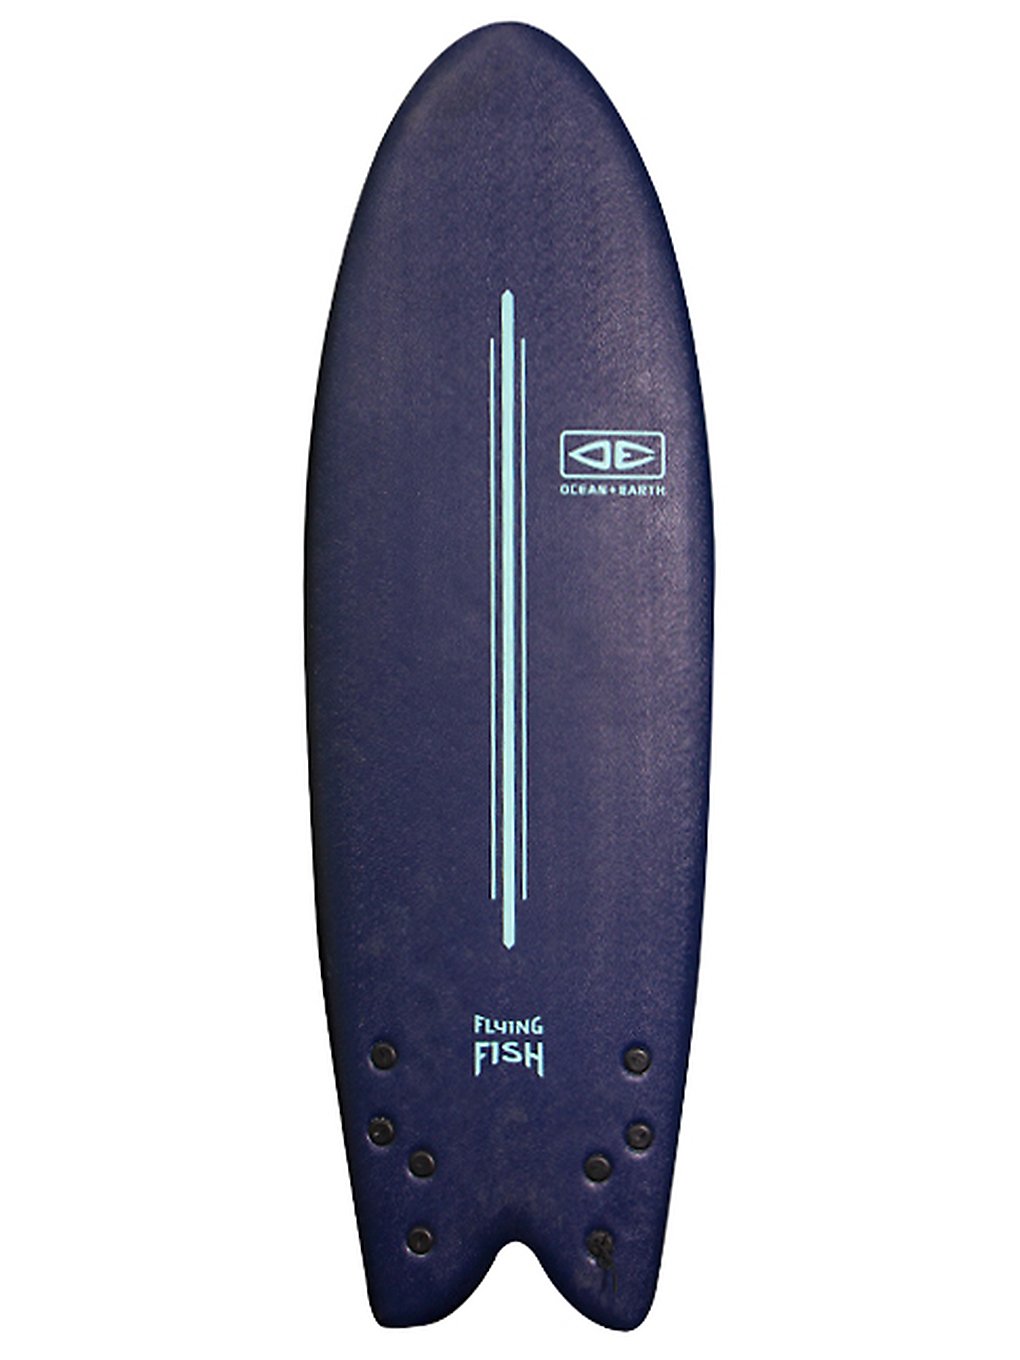 Ocean & Earth Ezi Flying Fish Quad Softboard 5'8 Surfboard midnight blue